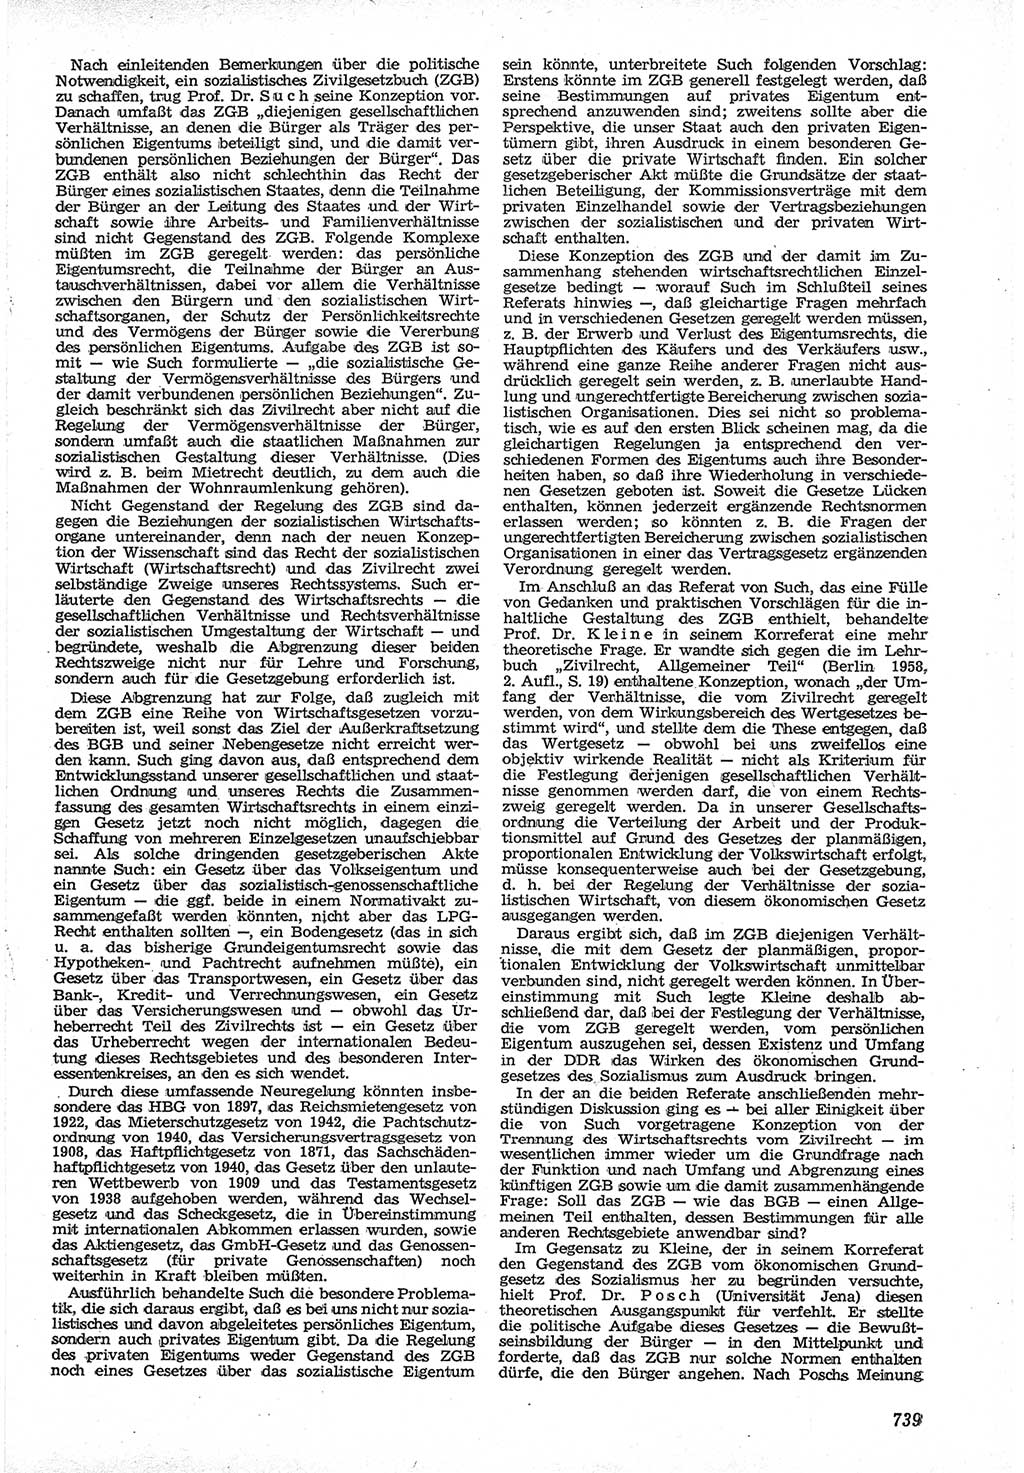 Neue Justiz (NJ), Zeitschrift für Recht und Rechtswissenschaft [Deutsche Demokratische Republik (DDR)], 12. Jahrgang 1958, Seite 739 (NJ DDR 1958, S. 739)